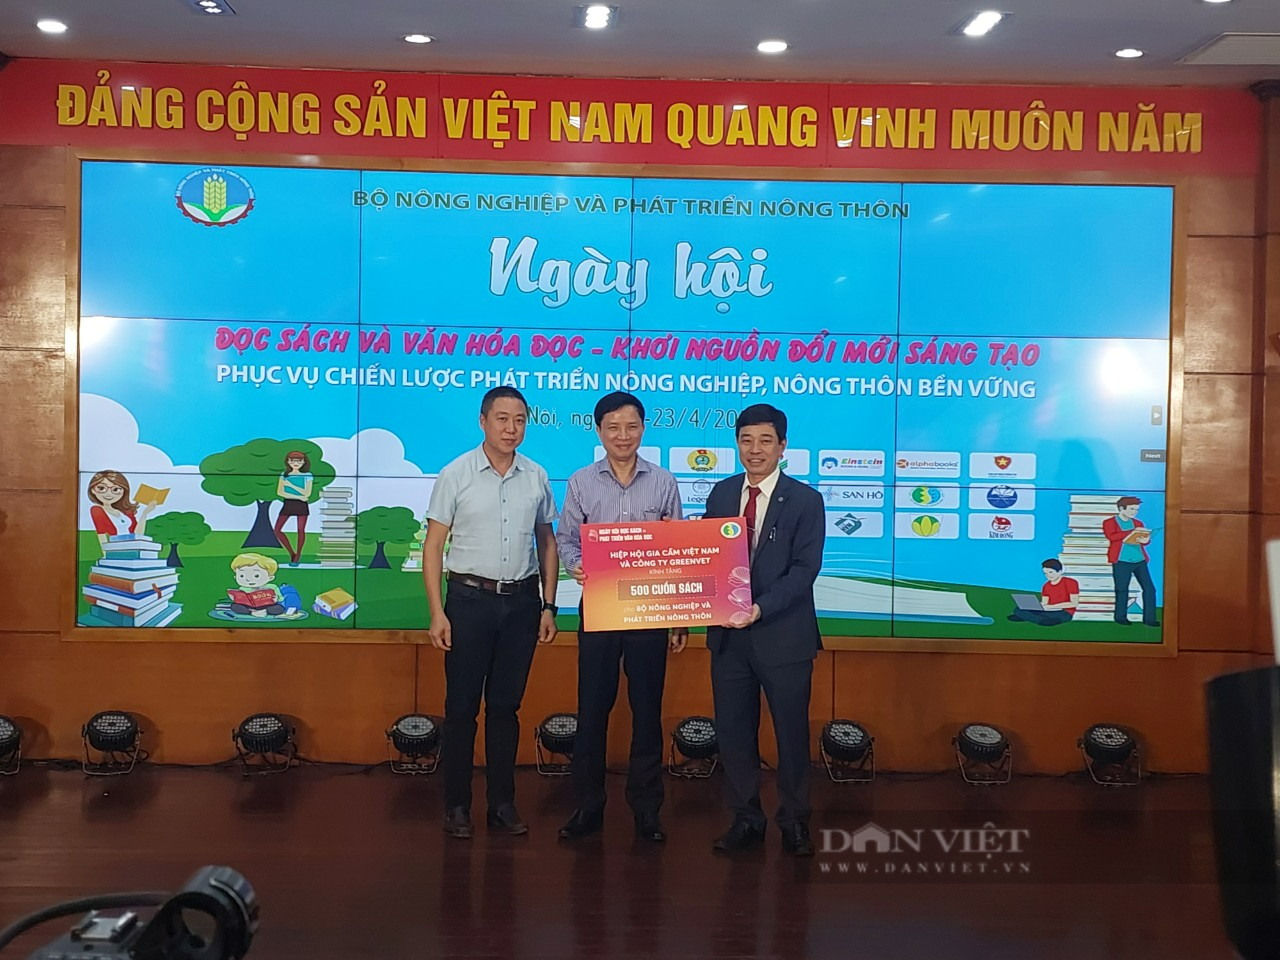 Hưởng ứng Ngày Sách và Văn hóa đọc Việt Nam, Bộ NNPTNT khai trương không gian đọc số - Ảnh 2.